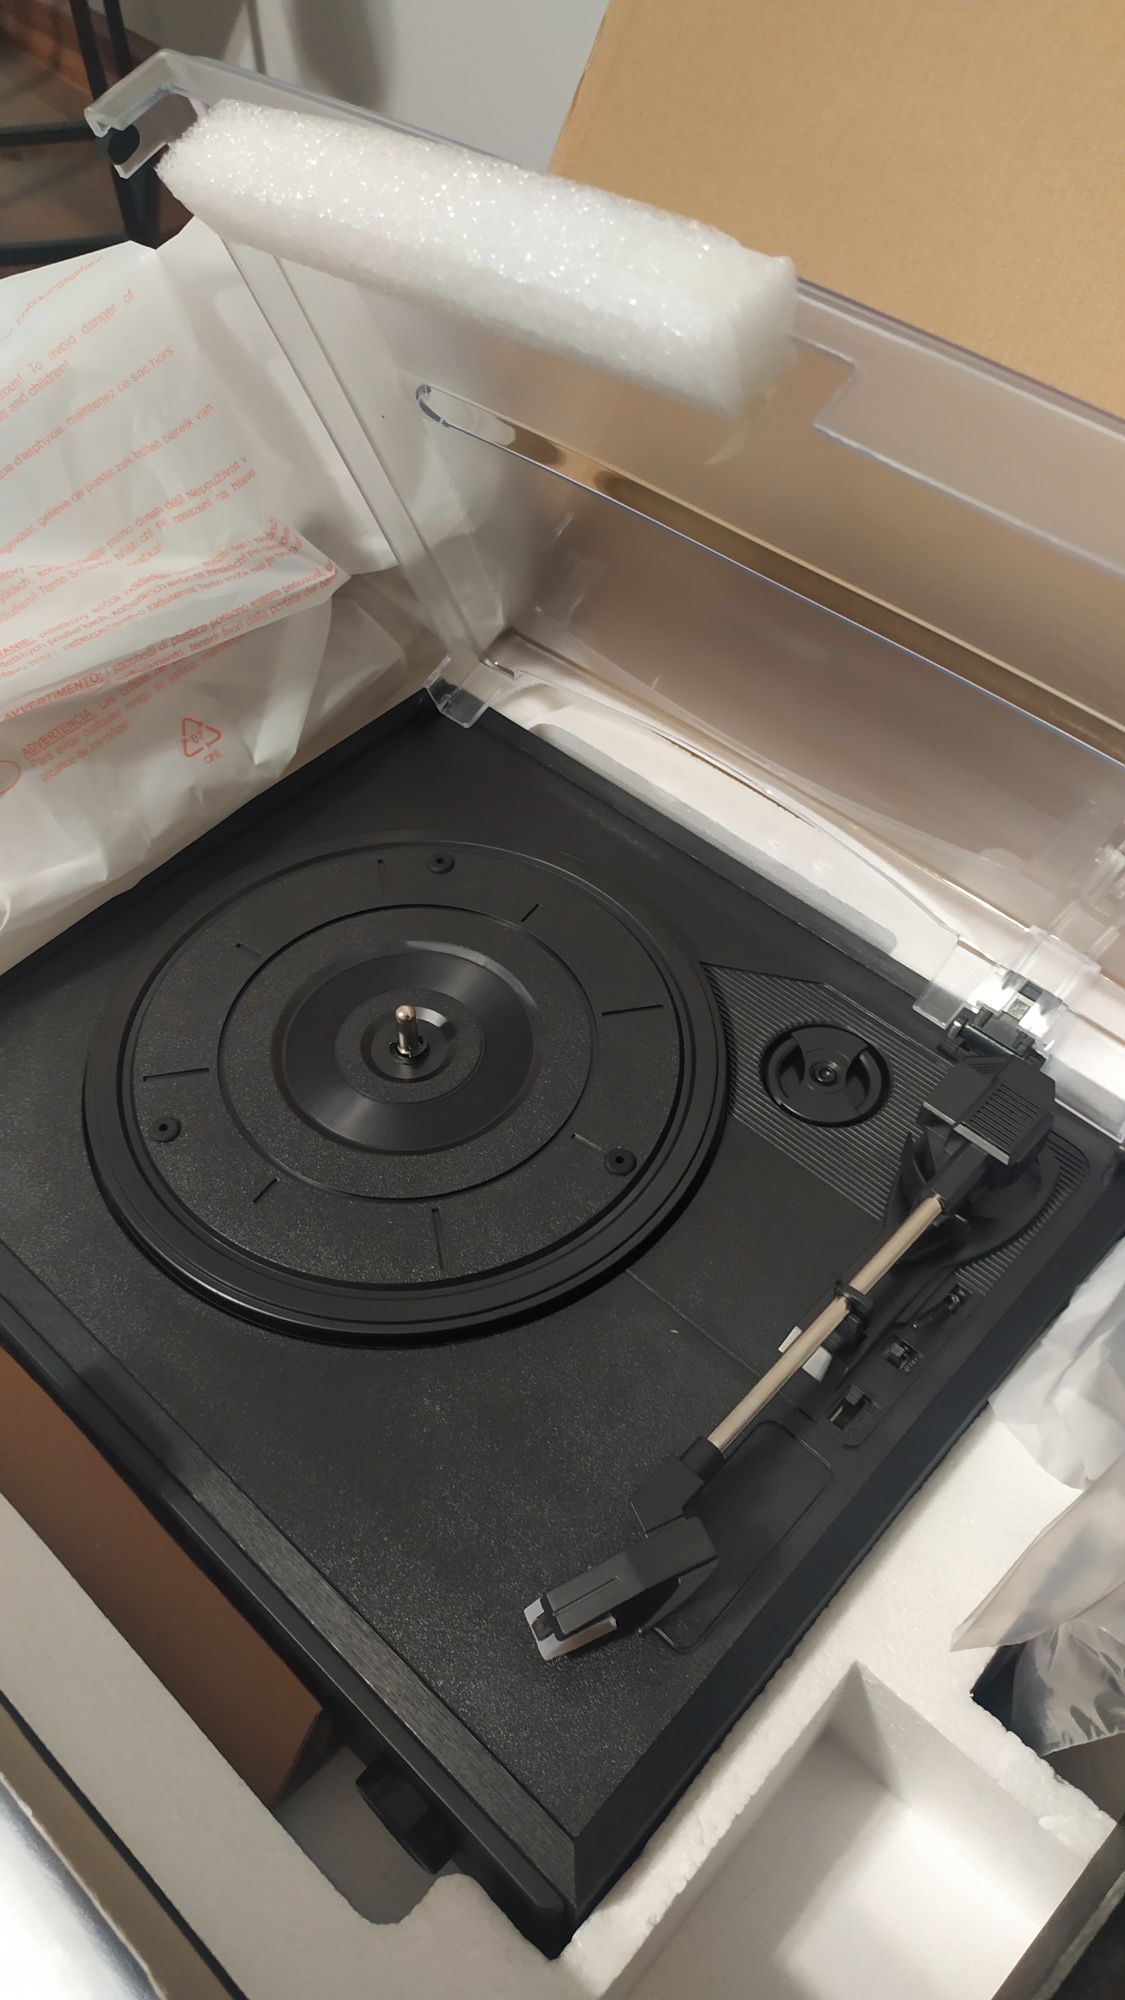 Nowy gramofon connect vinyl miniwieża stereo smartaudio Spotify dab